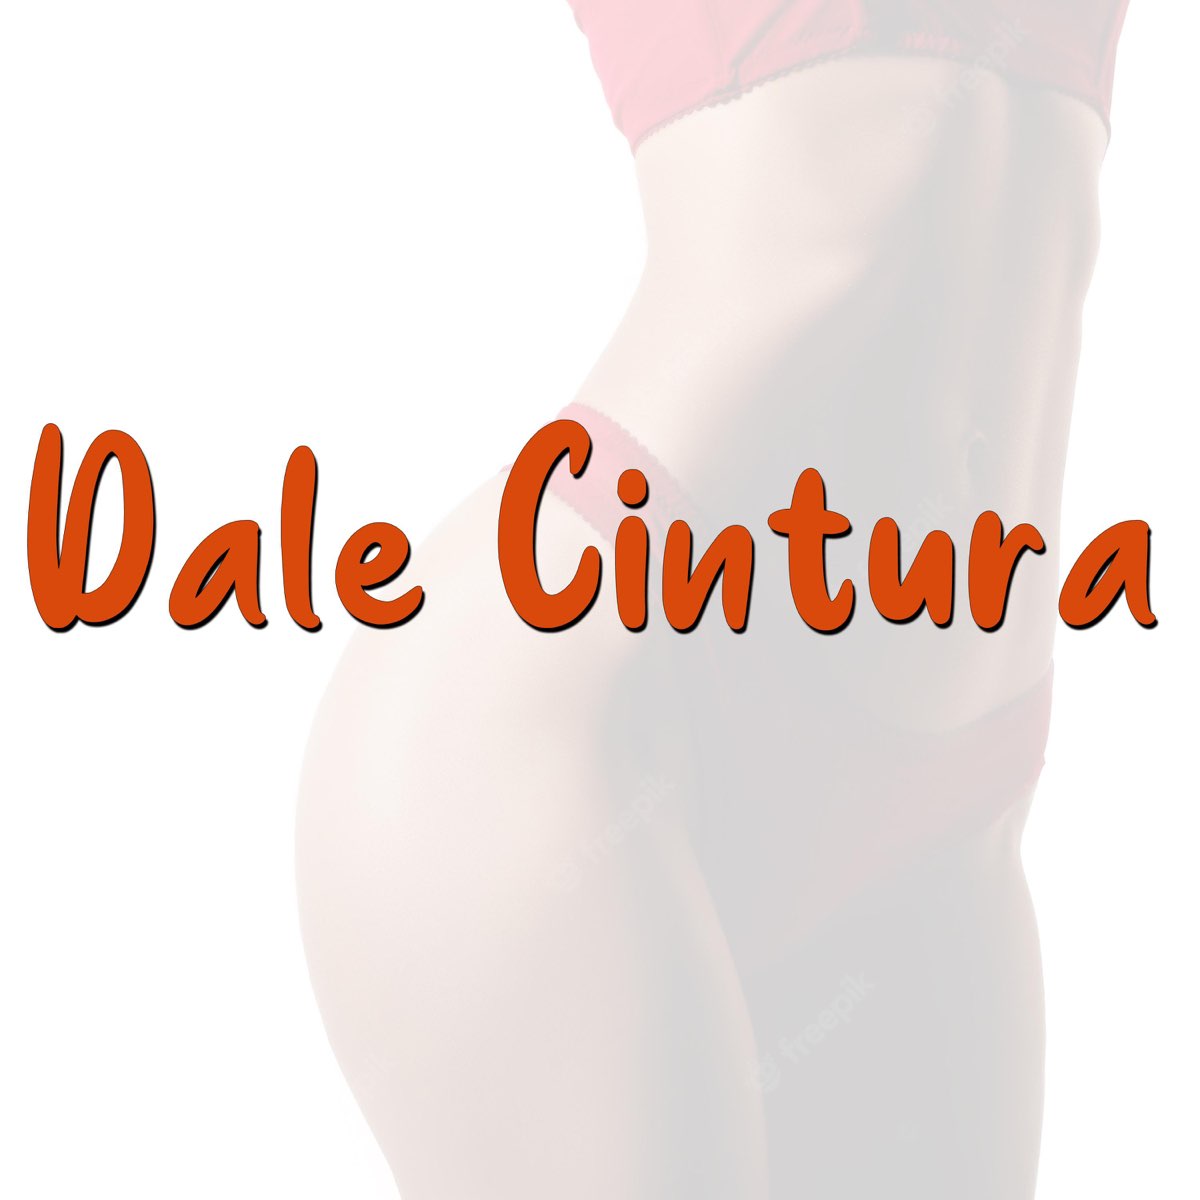 Dale Cintura - Single by La Caja negra Produce on Apple Music